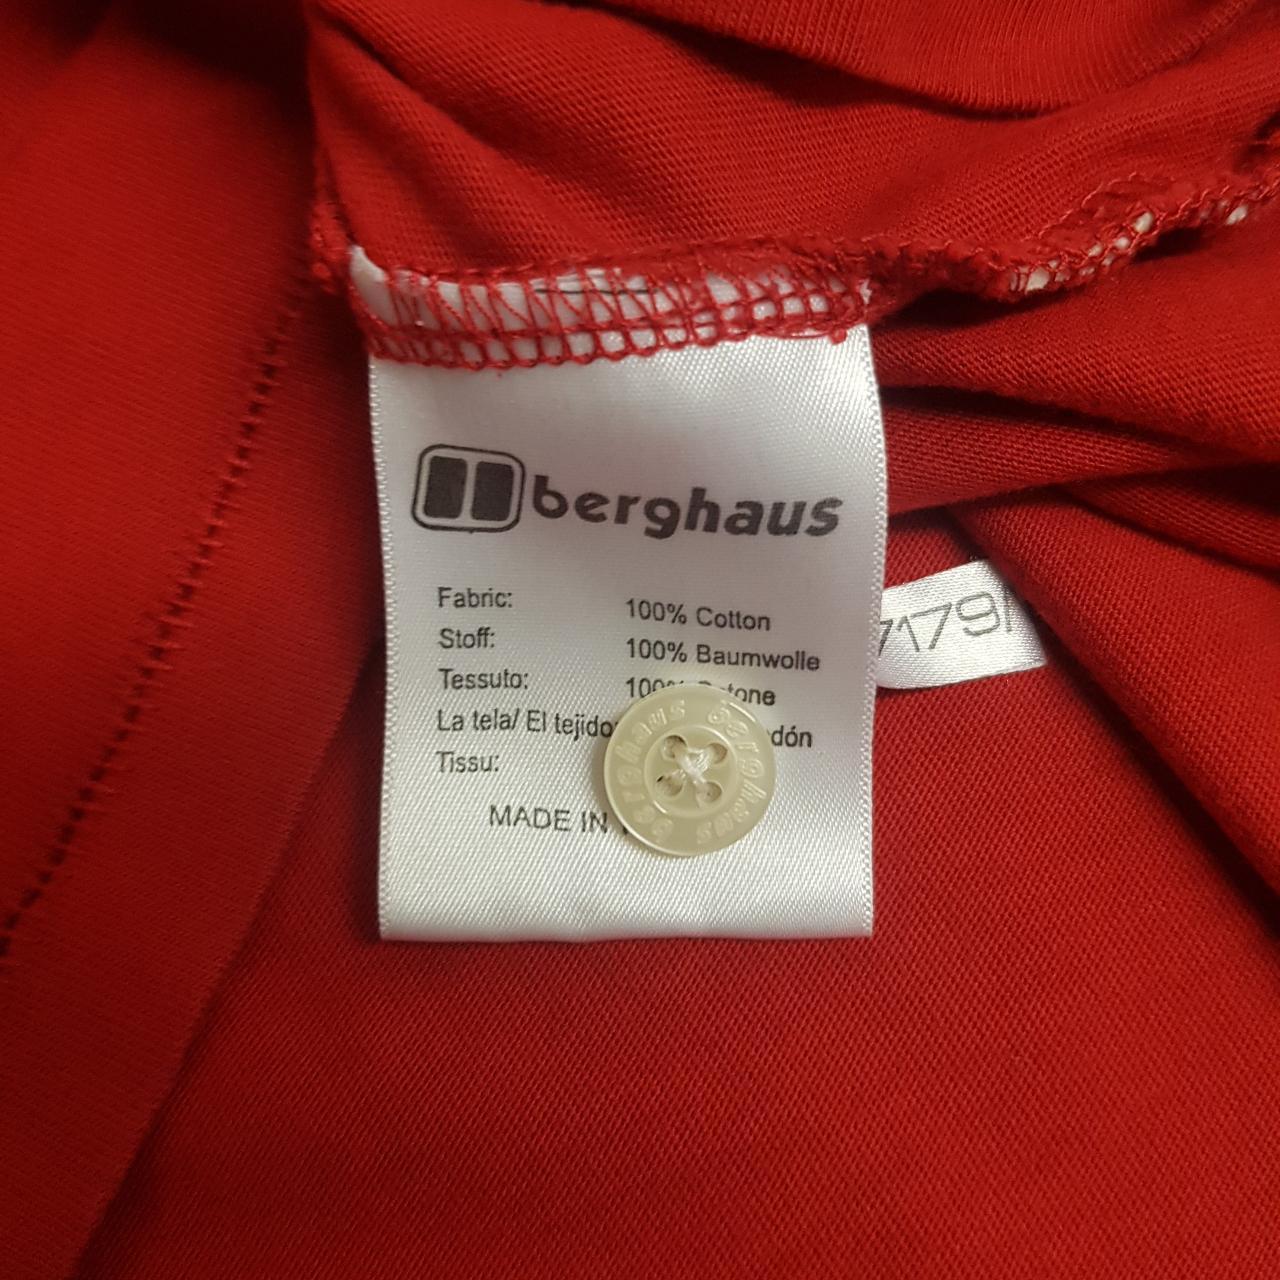 Berghaus short sleeve polo shirt. Very good... - Depop